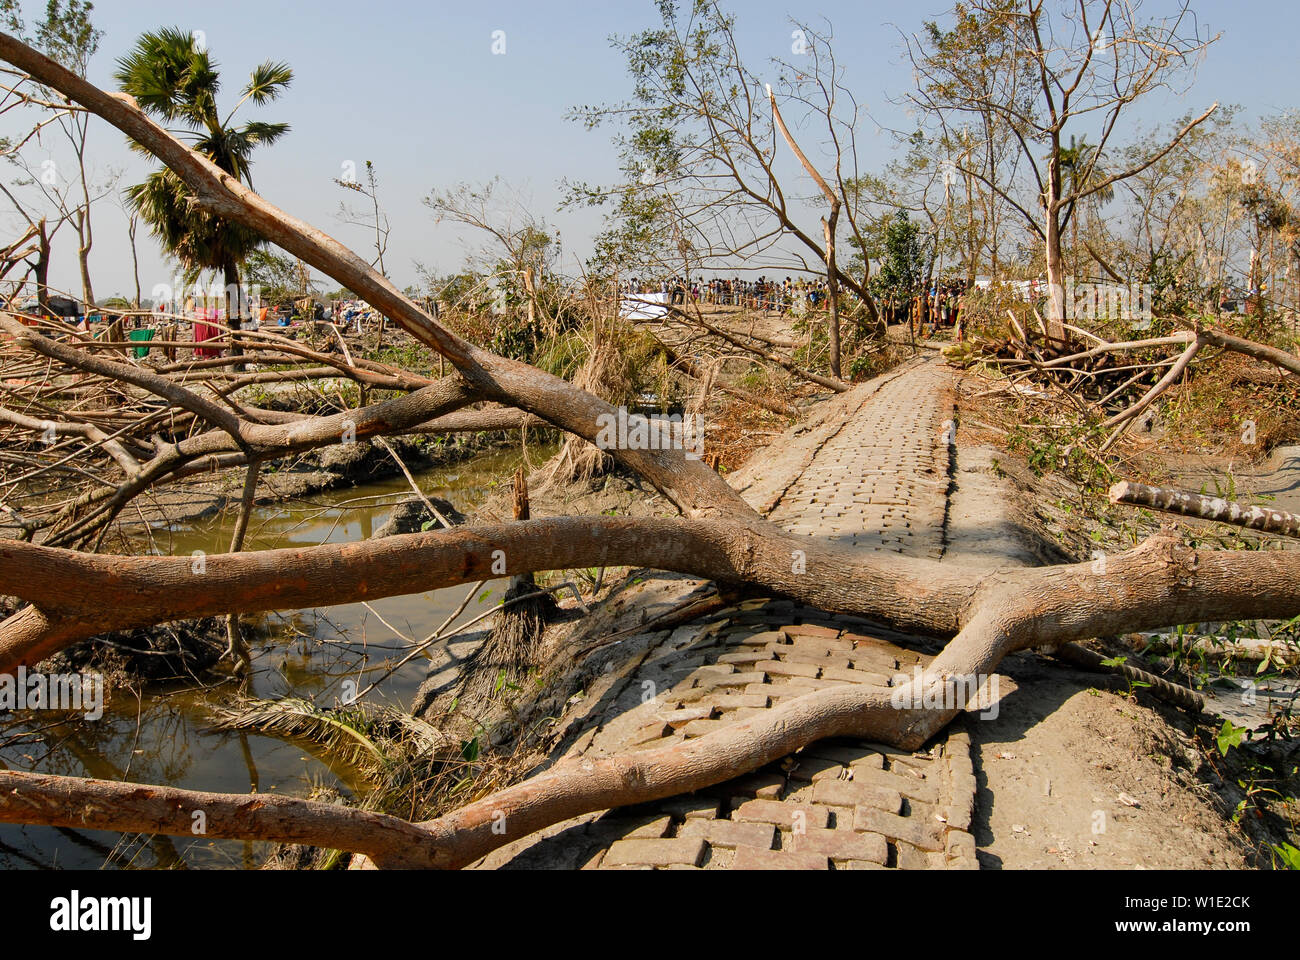 Il Bangladesh, il ciclone Sidr e alta marea distruggono villaggi in Southkhali nel distretto Bagerhat / BANGLADESCH, der Zyklon Wirbelsturm Sidr und eine Sturmflut zerstoeren Doerfer Kuestengebiet im von Southkhali Foto Stock